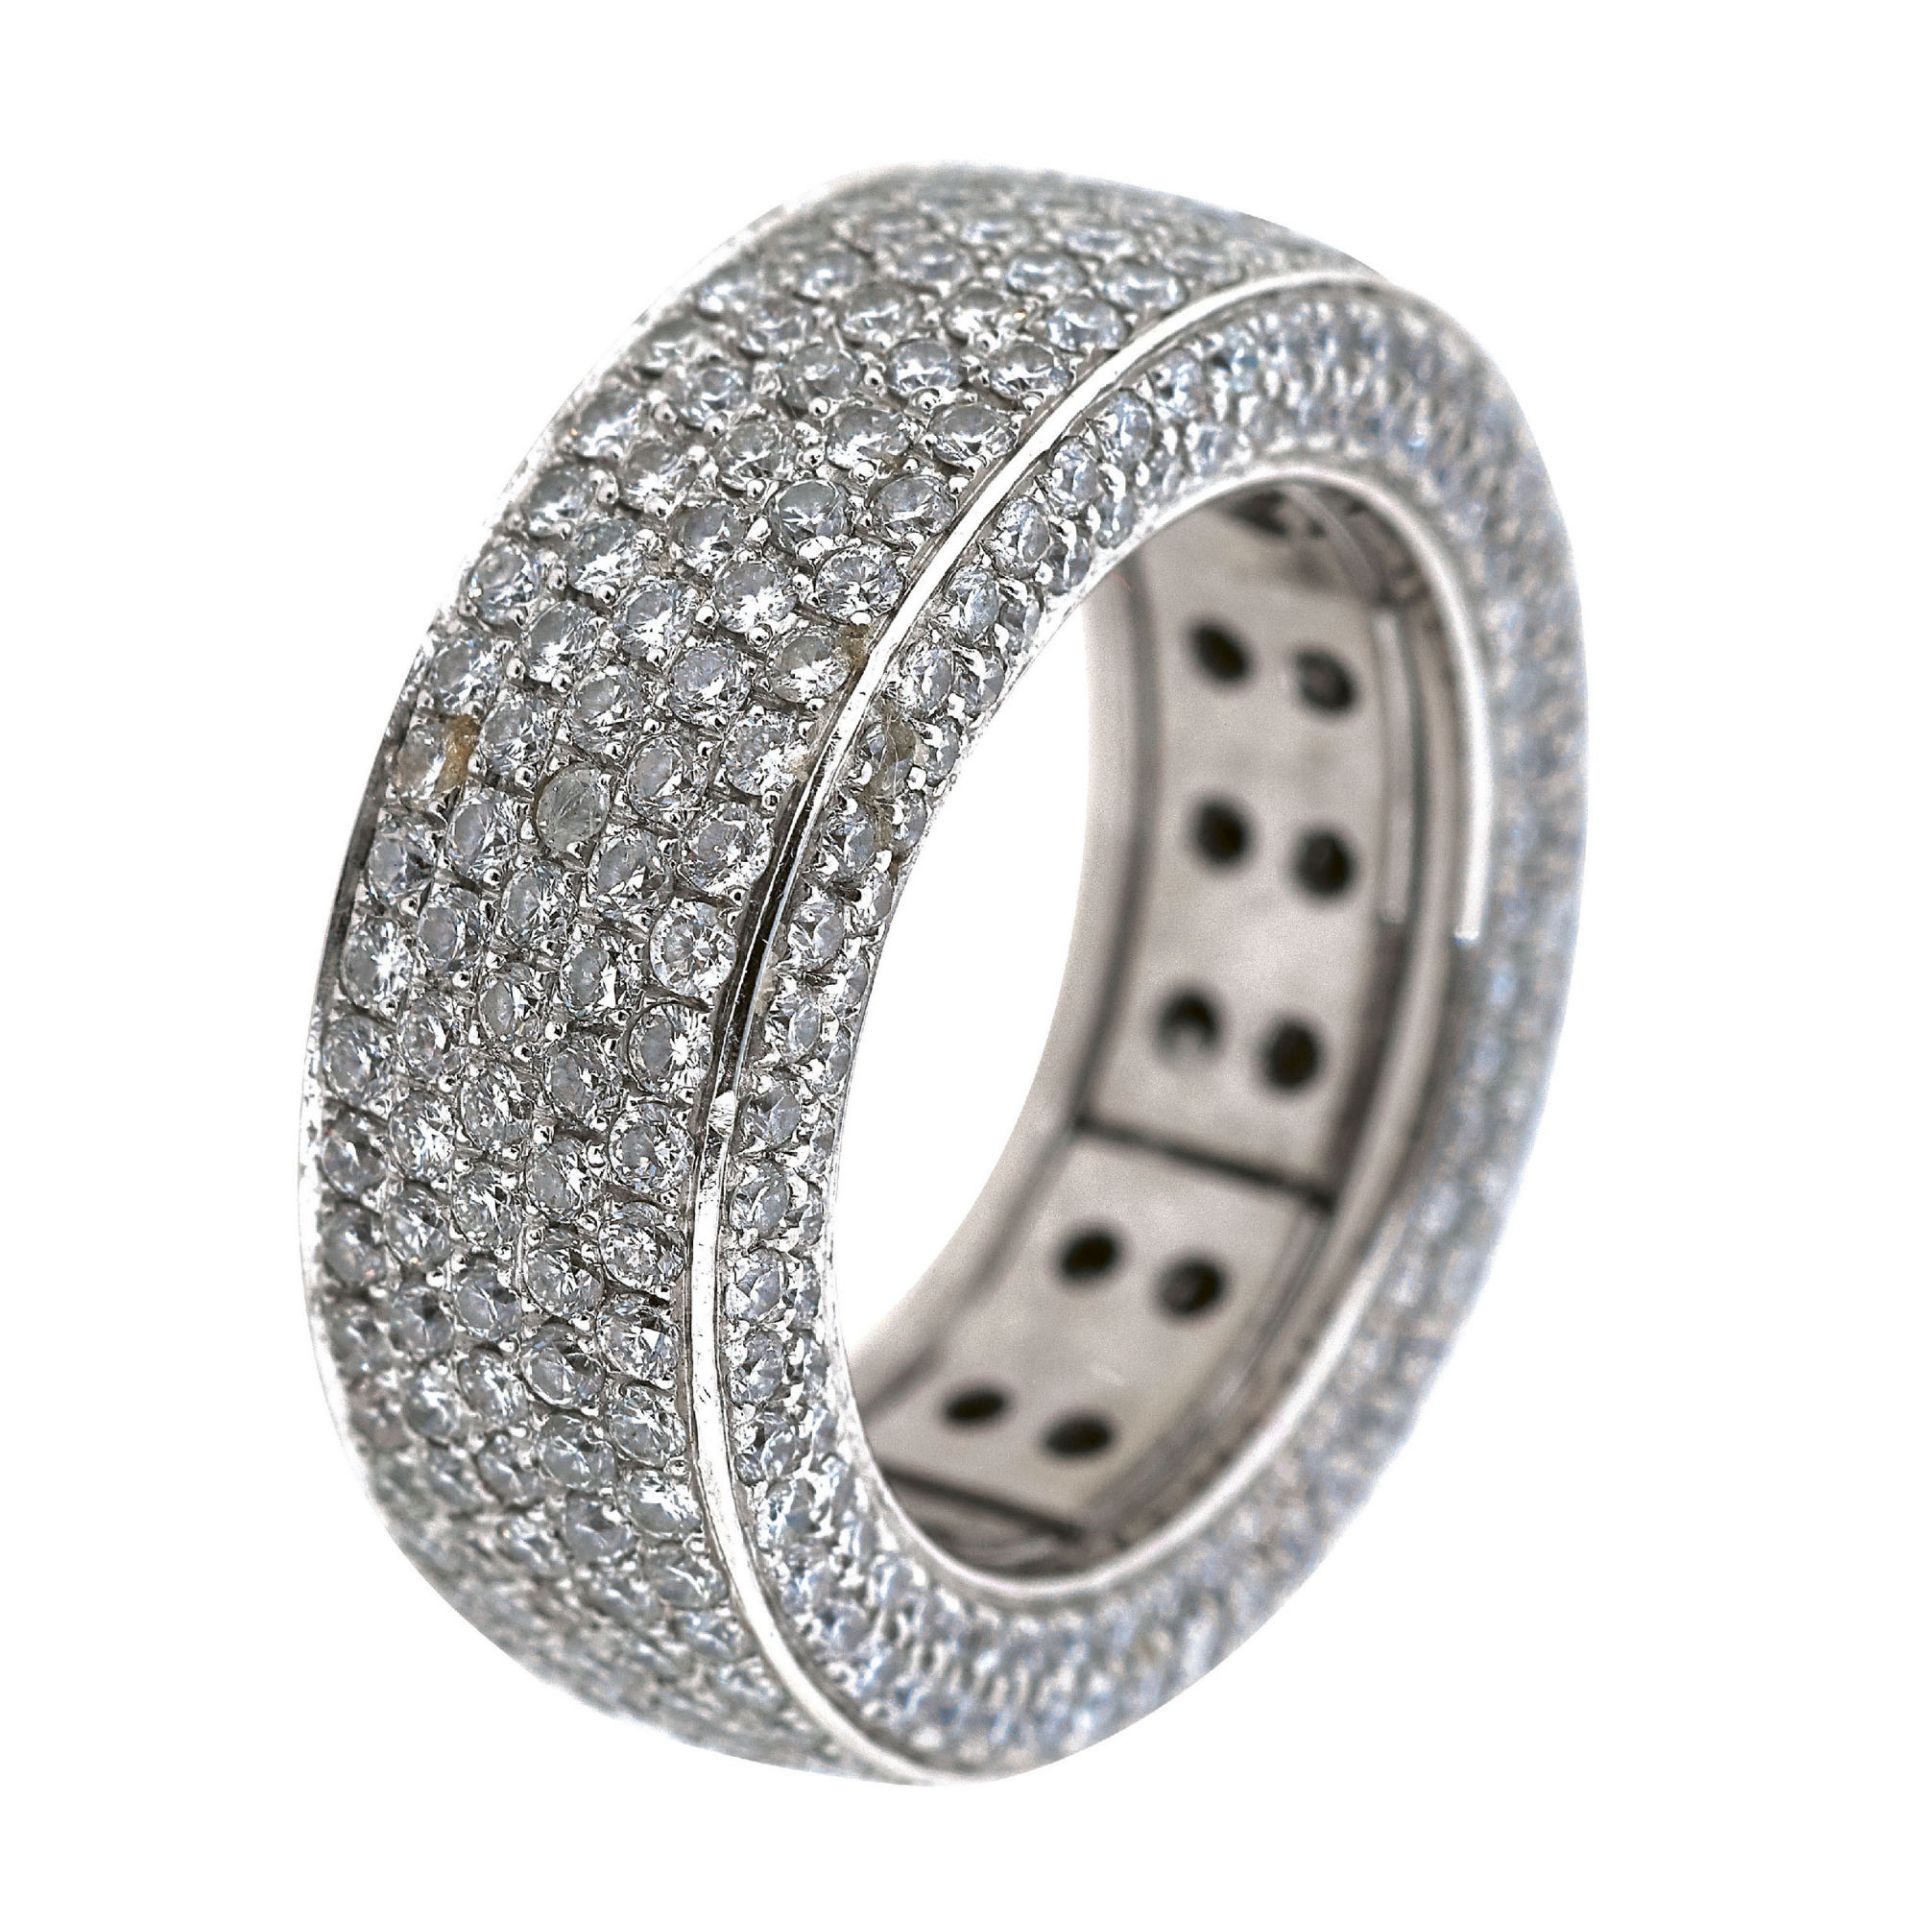 BRILLANT-RING / Diamond ring